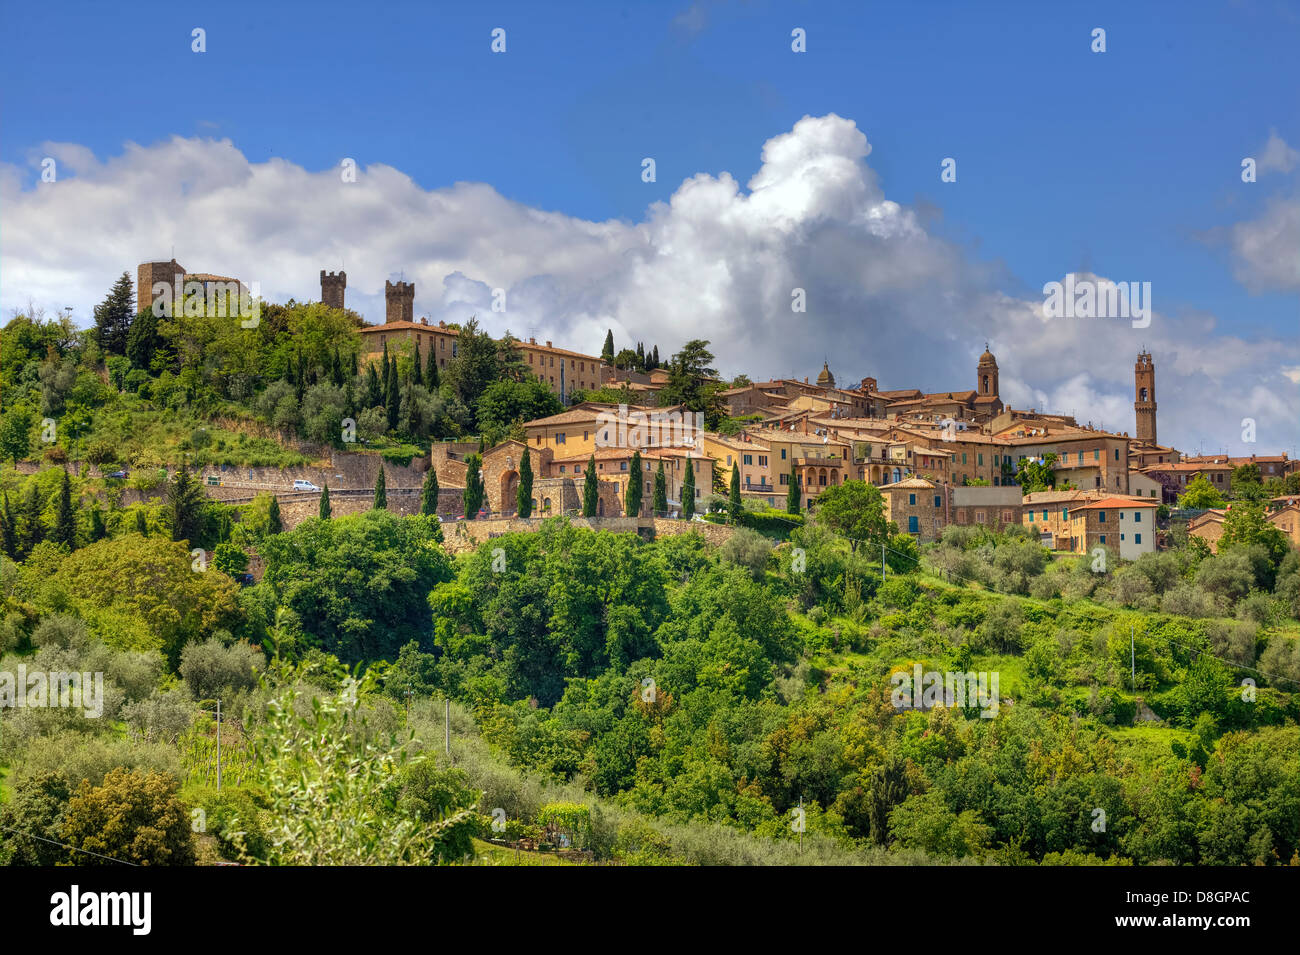 Vue panoramique de Montalcino, Sienne, Toscane, Italie Banque D'Images